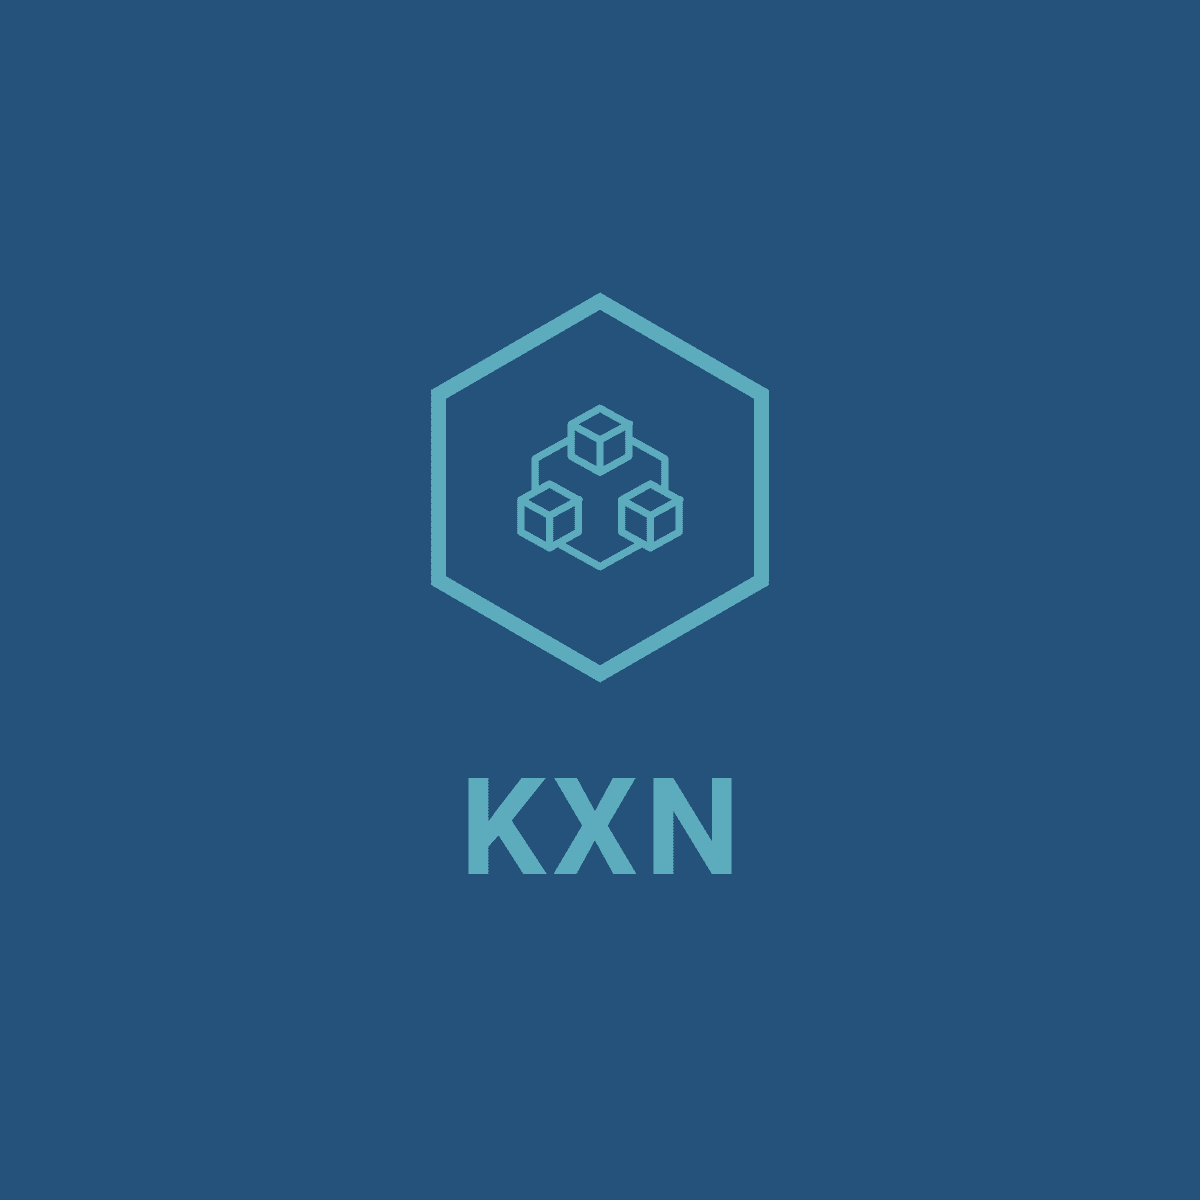 KXN – kxn